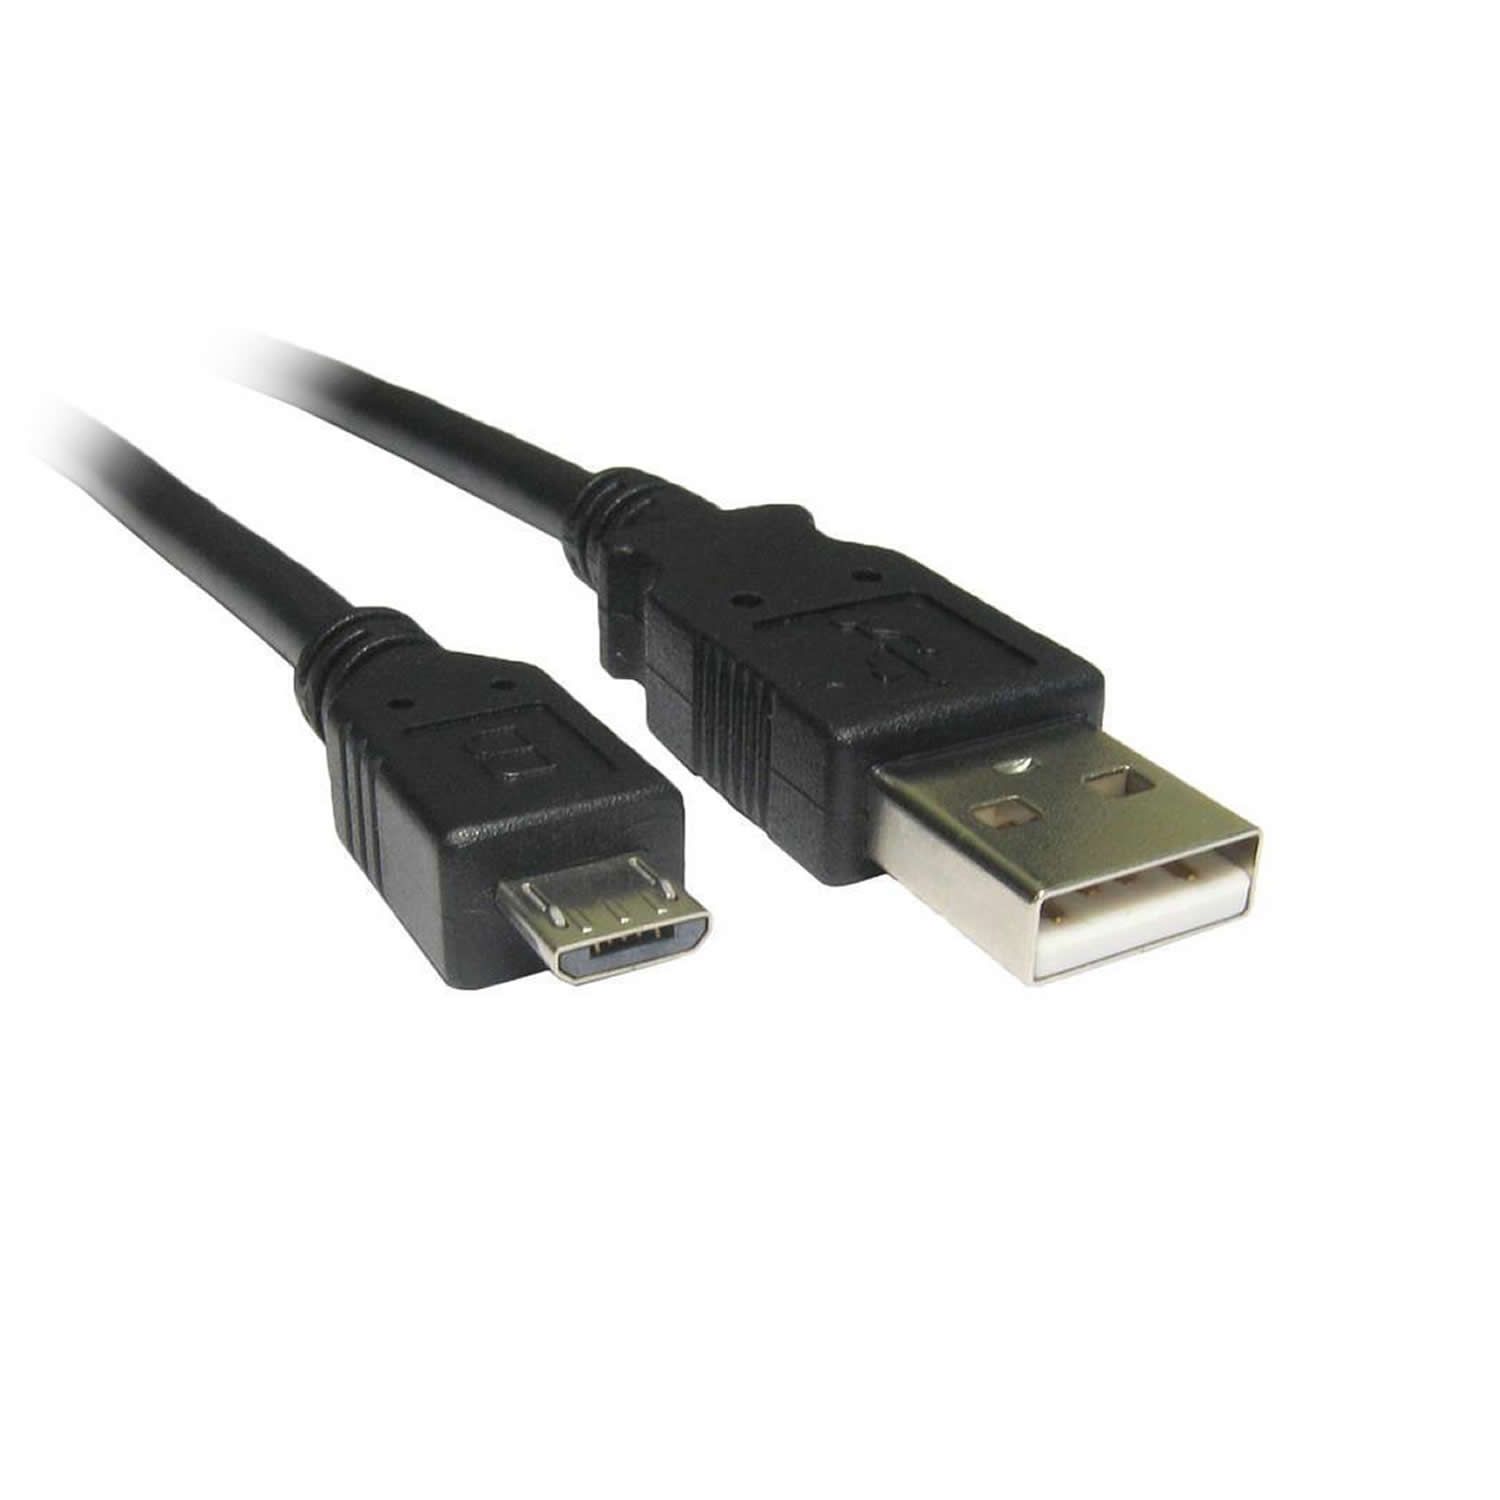 Cable Duracell USB5023A - USB a Micro USB - Para Carga y Sincronización - 2 Metros - Color Negro